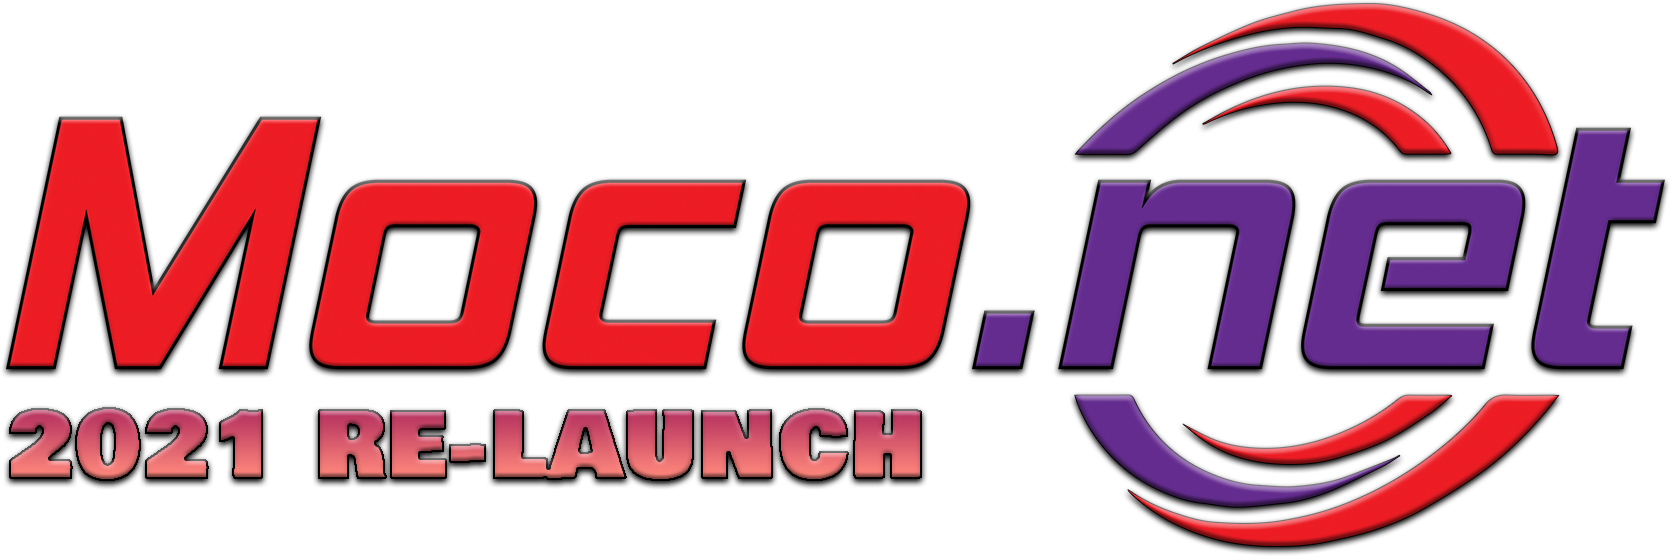 A Moco.net 2021 Site Re-Launch!